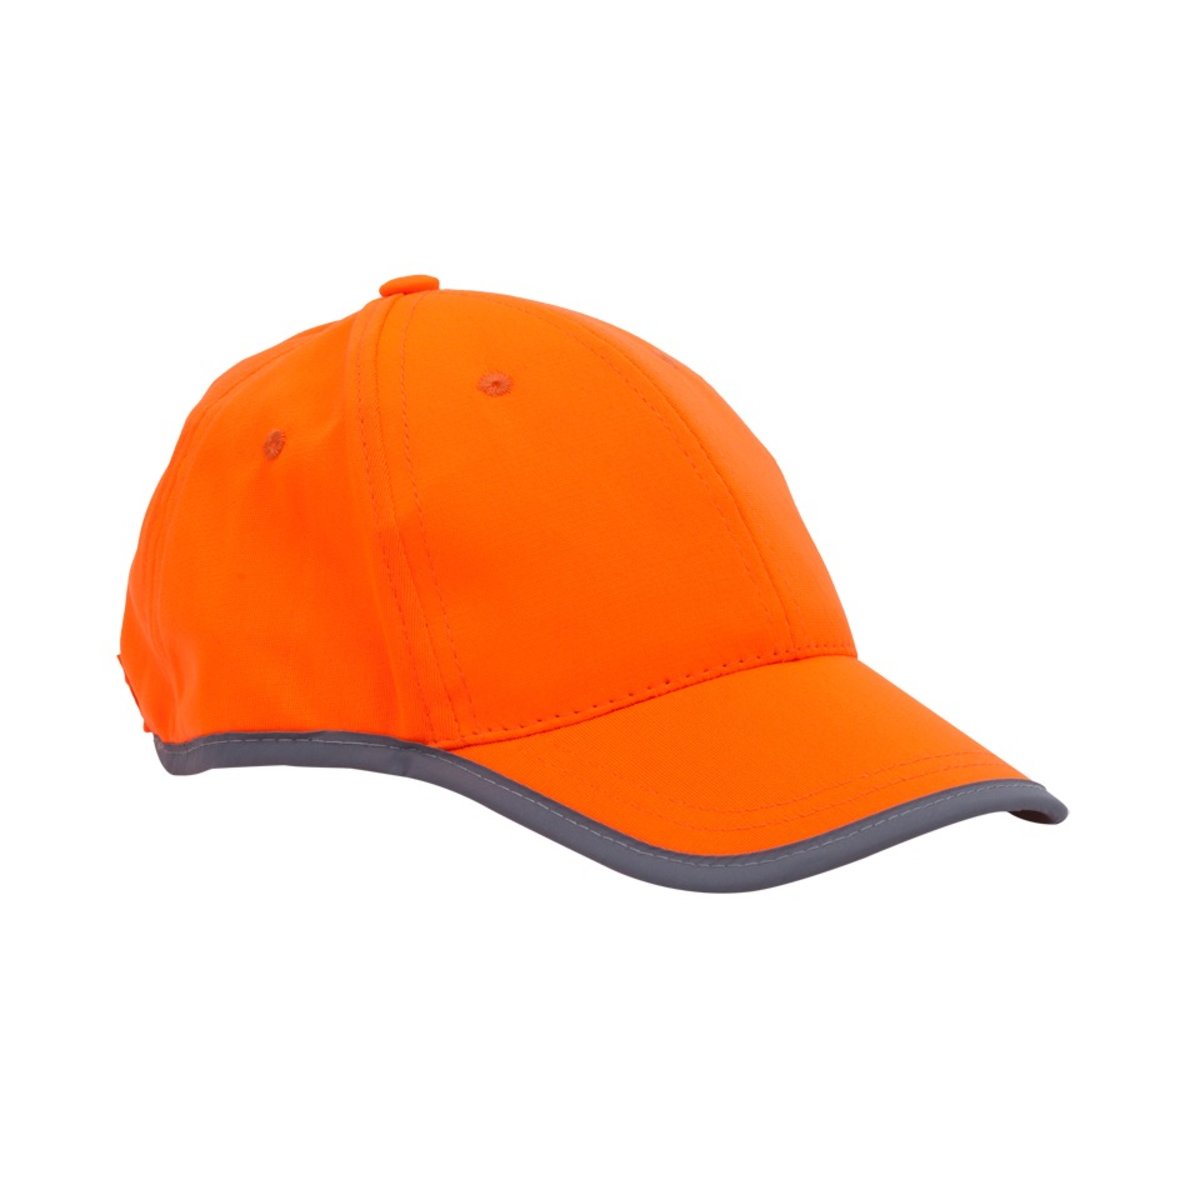 Odblaskowa czapka dziecięca Sportif